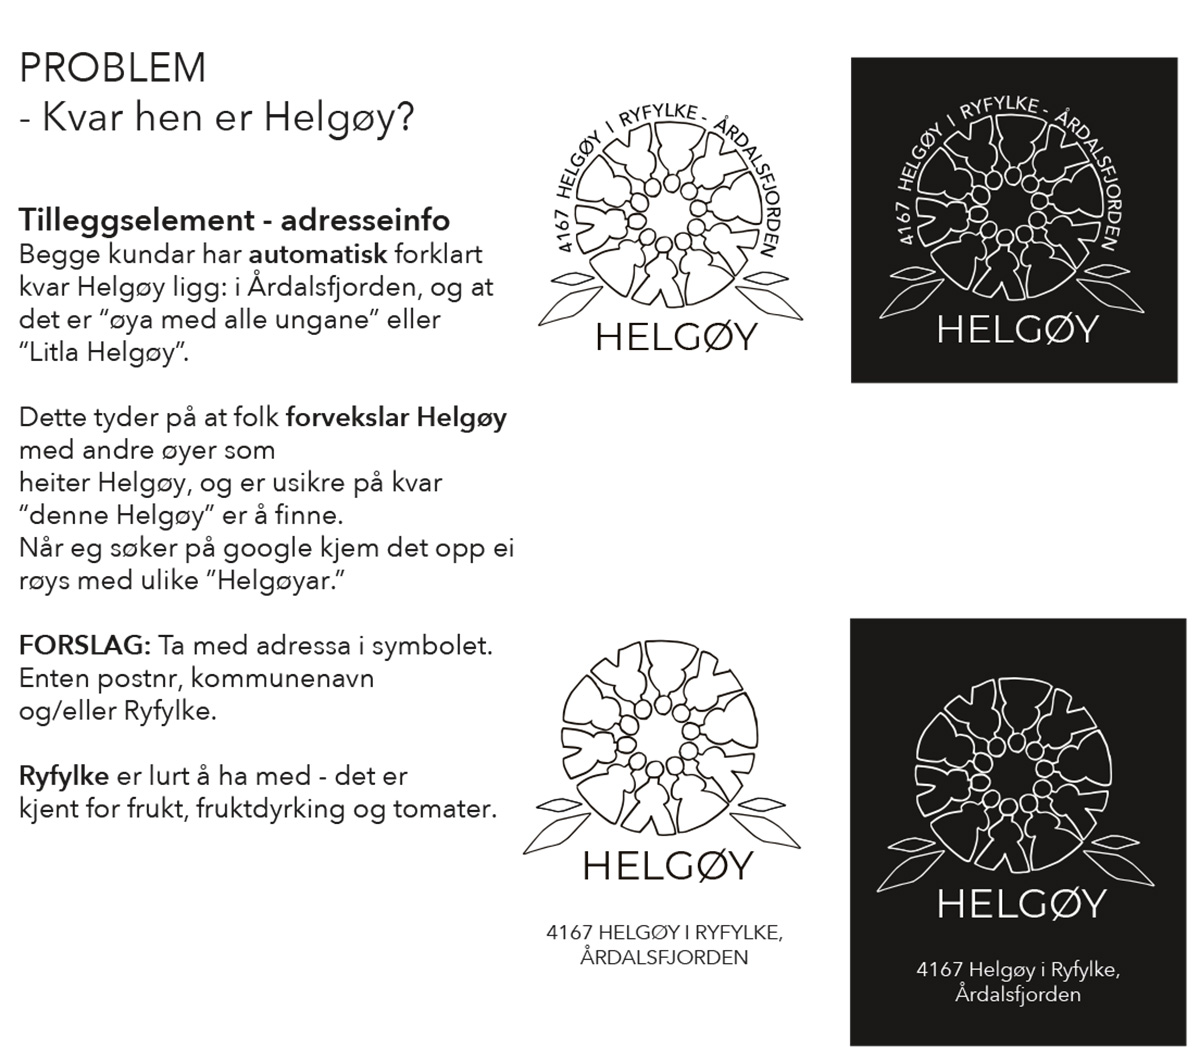 Ideen bak symbolet Helgøy6